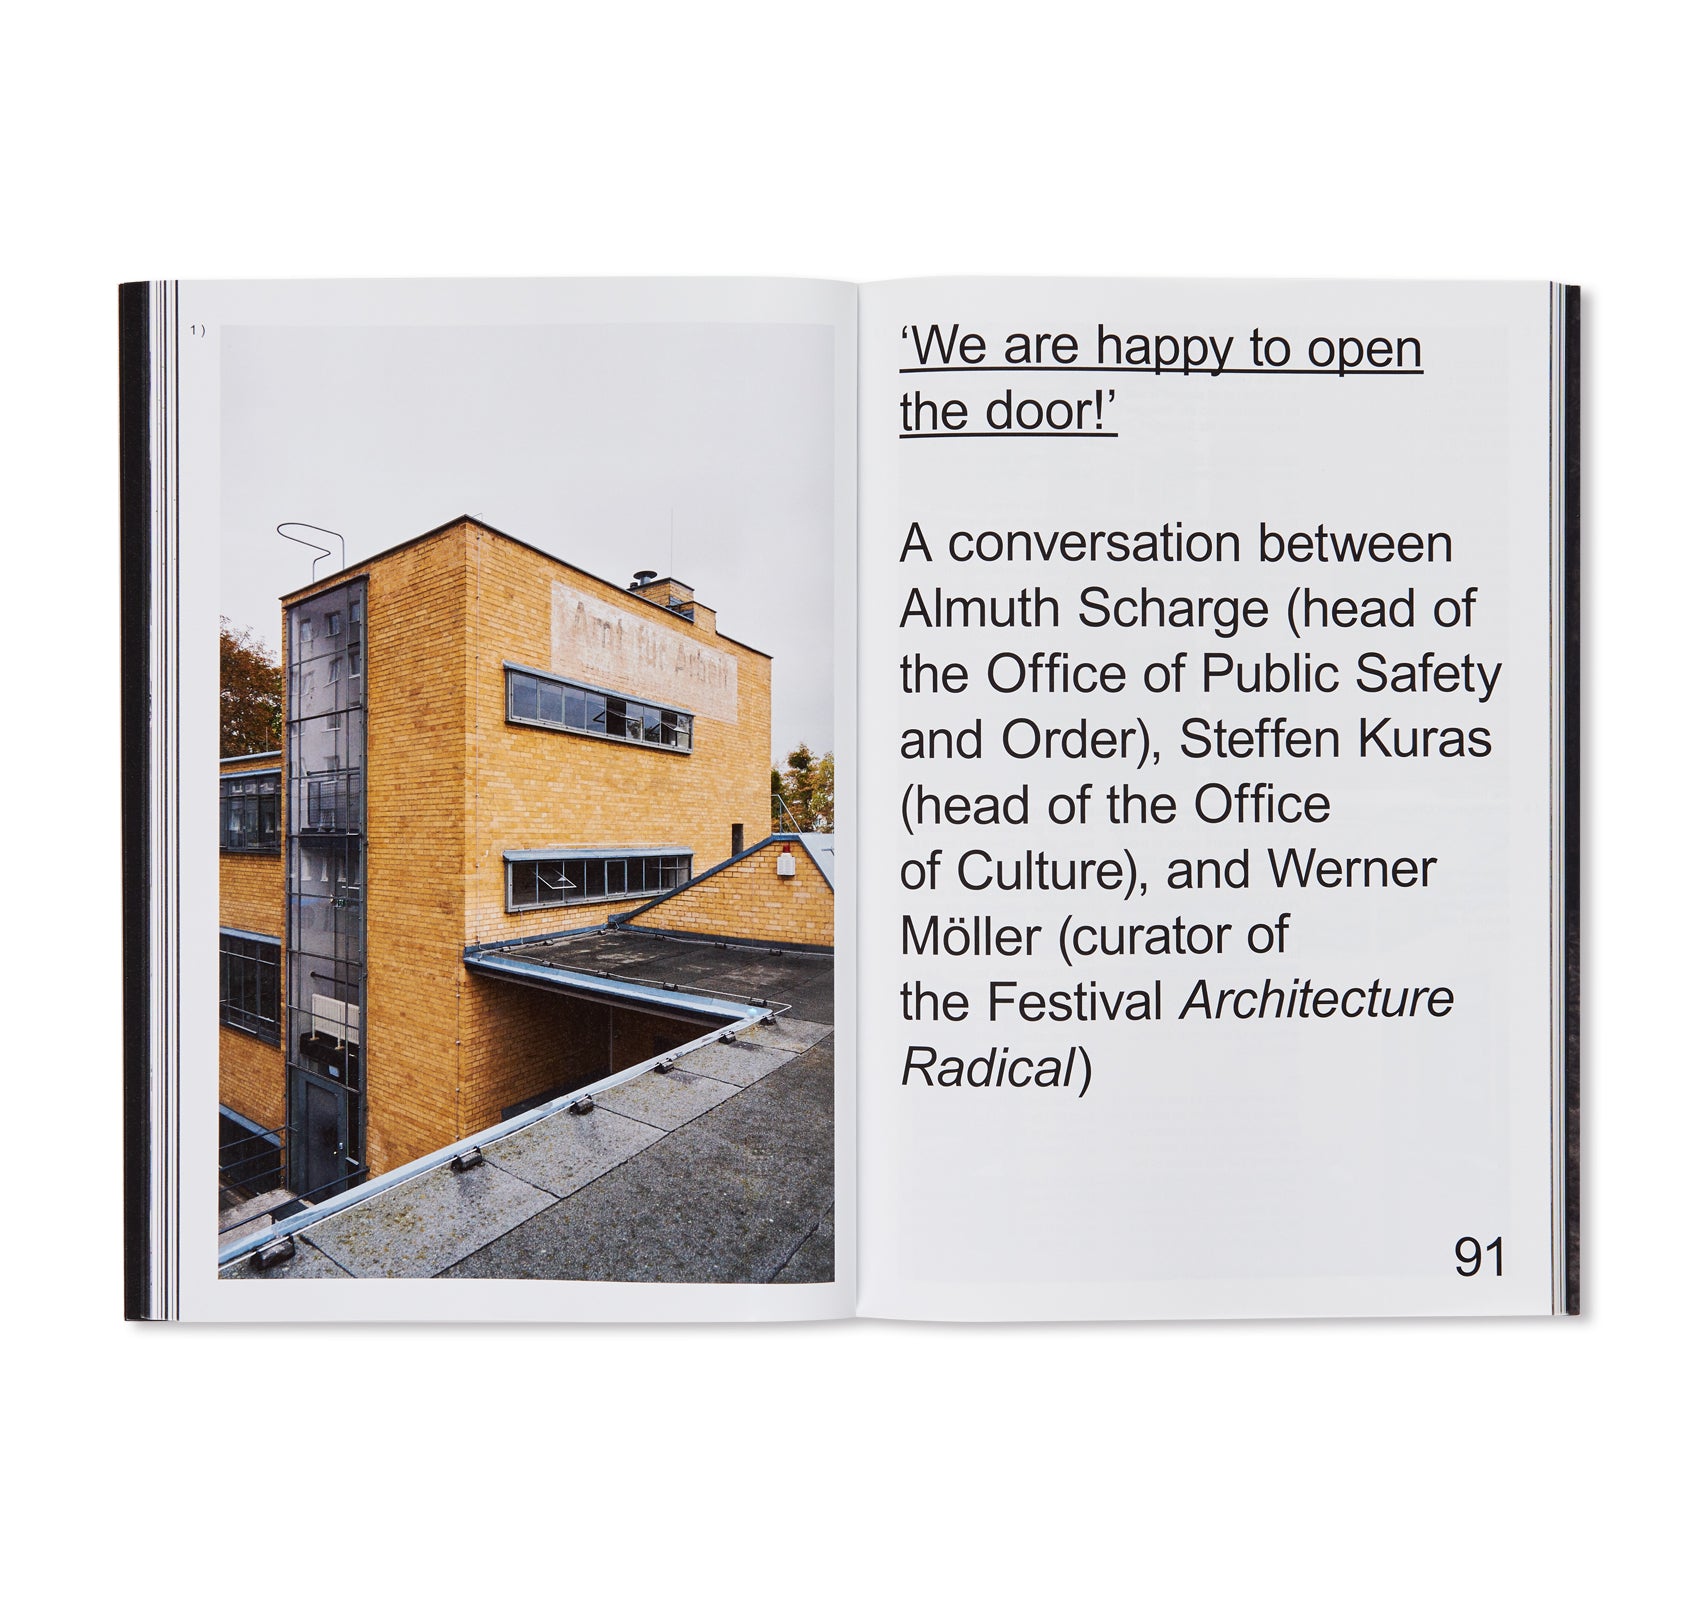 CENTENARY - BAUHAUS 11. The Bauhaus Dessau Foundation's Magazine by Stiftung Bauhaus Dessau